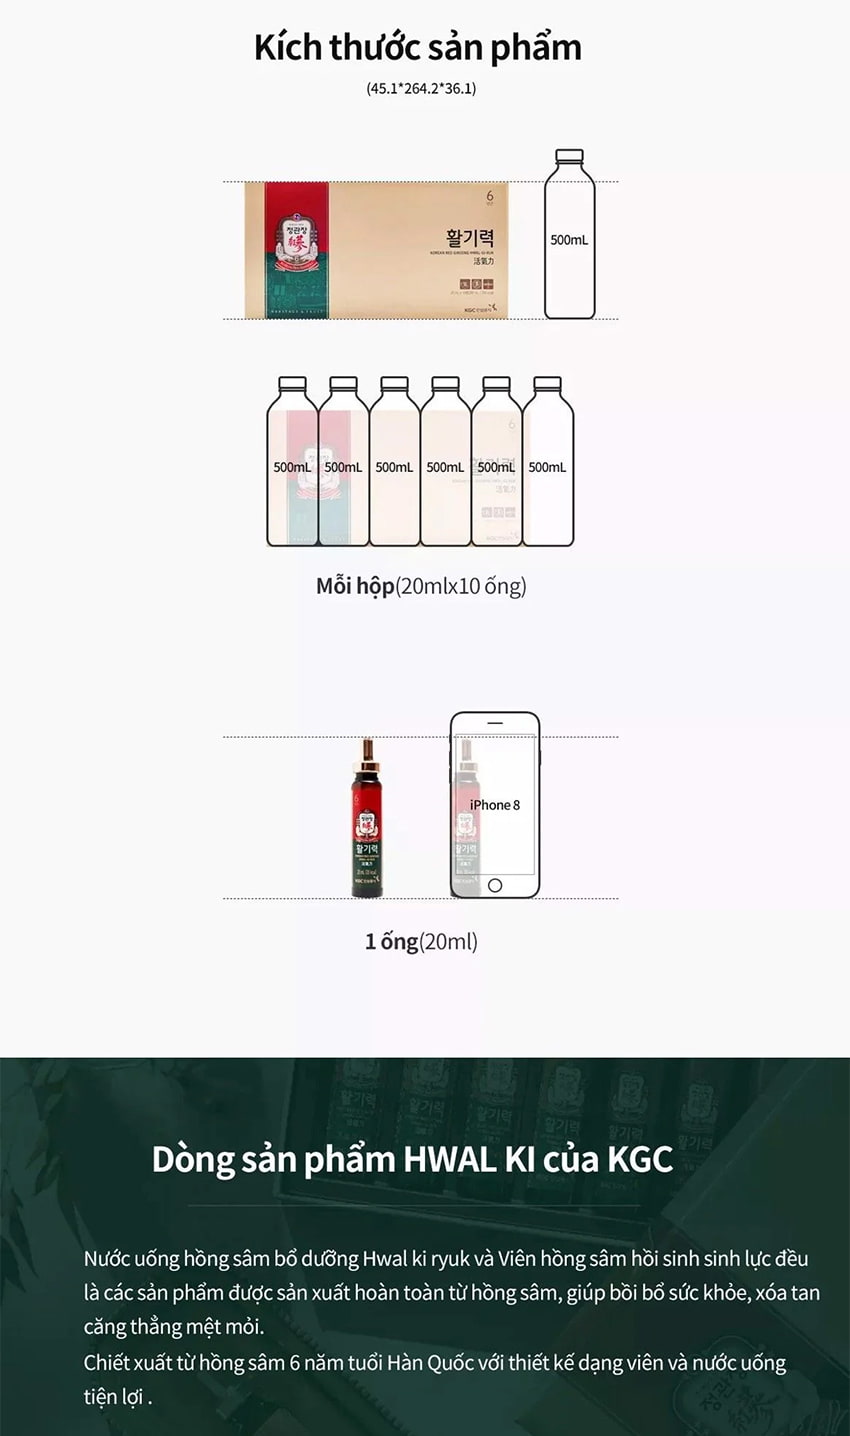 Kích thước sản phẩm Nước hồng sâm KGC hộp 10 ống - Chính hãng sâm Chính phủ Hàn Quốc Jung Kwan Jang